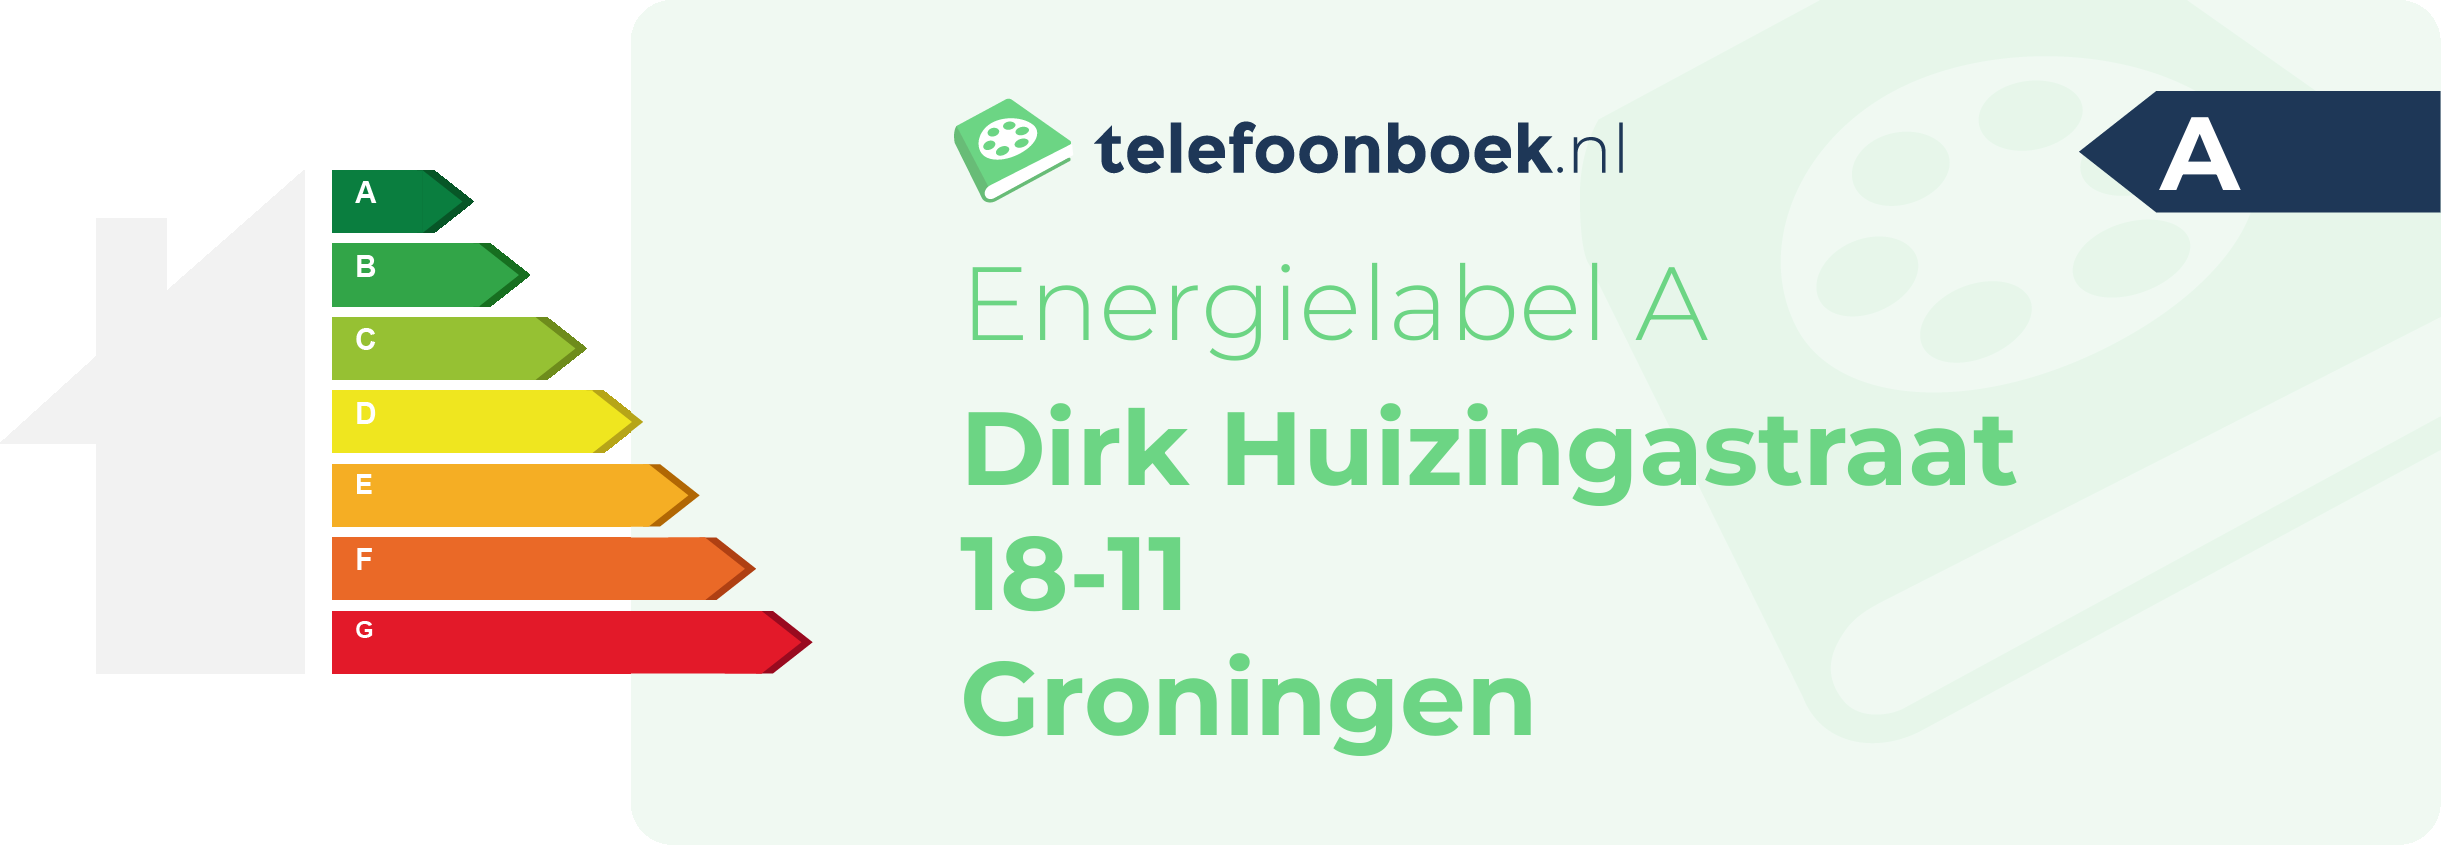 Energielabel Dirk Huizingastraat 18-11 Groningen